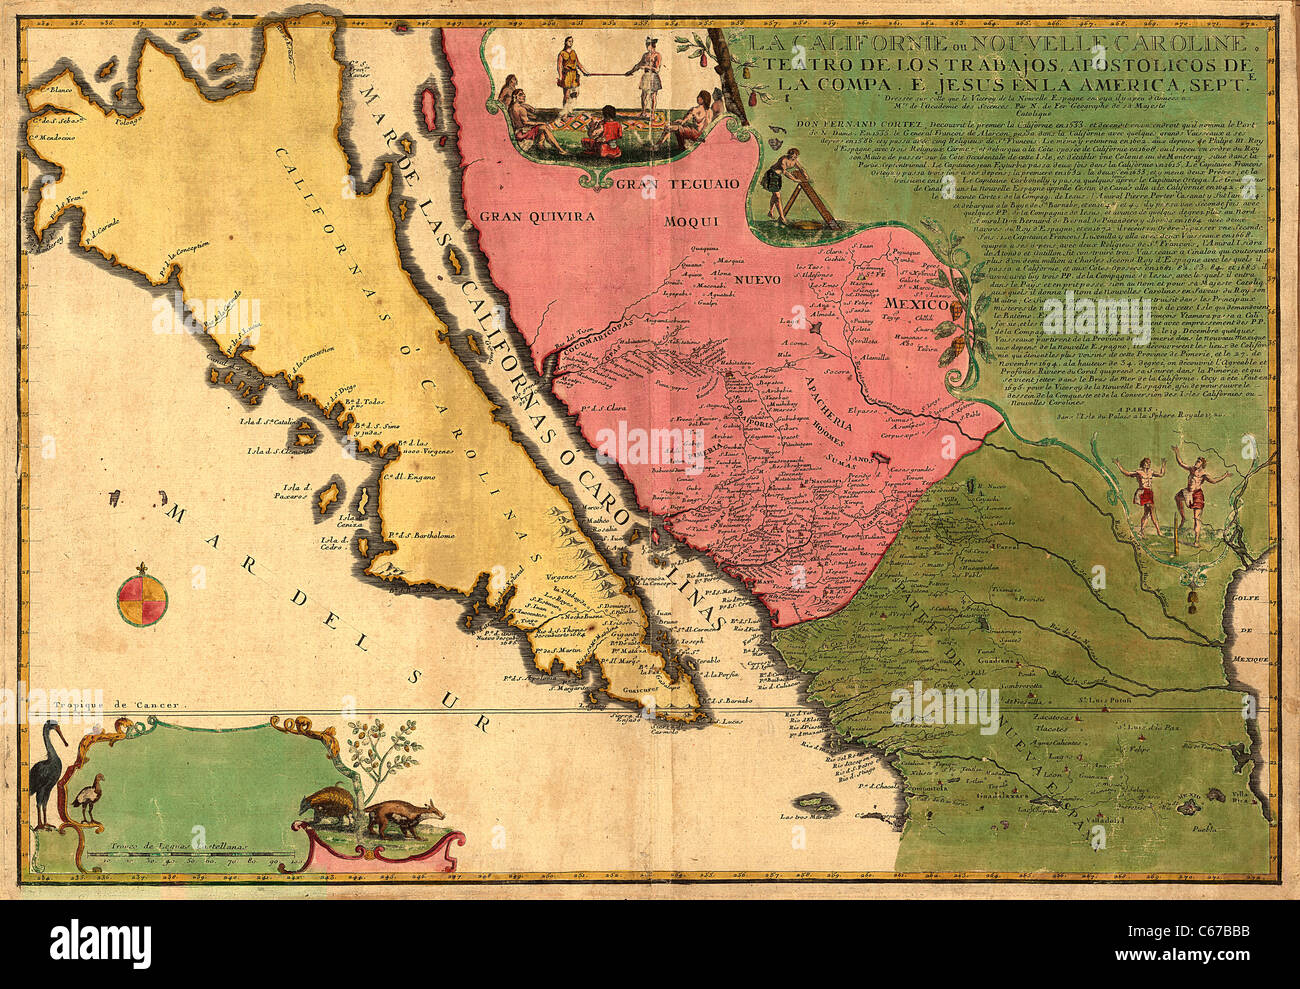 La Californie ou Nouvelle Caroline, 1720 - carta Antiquaria d'epoca della California come un'isola di Nicolas de Fer Foto Stock